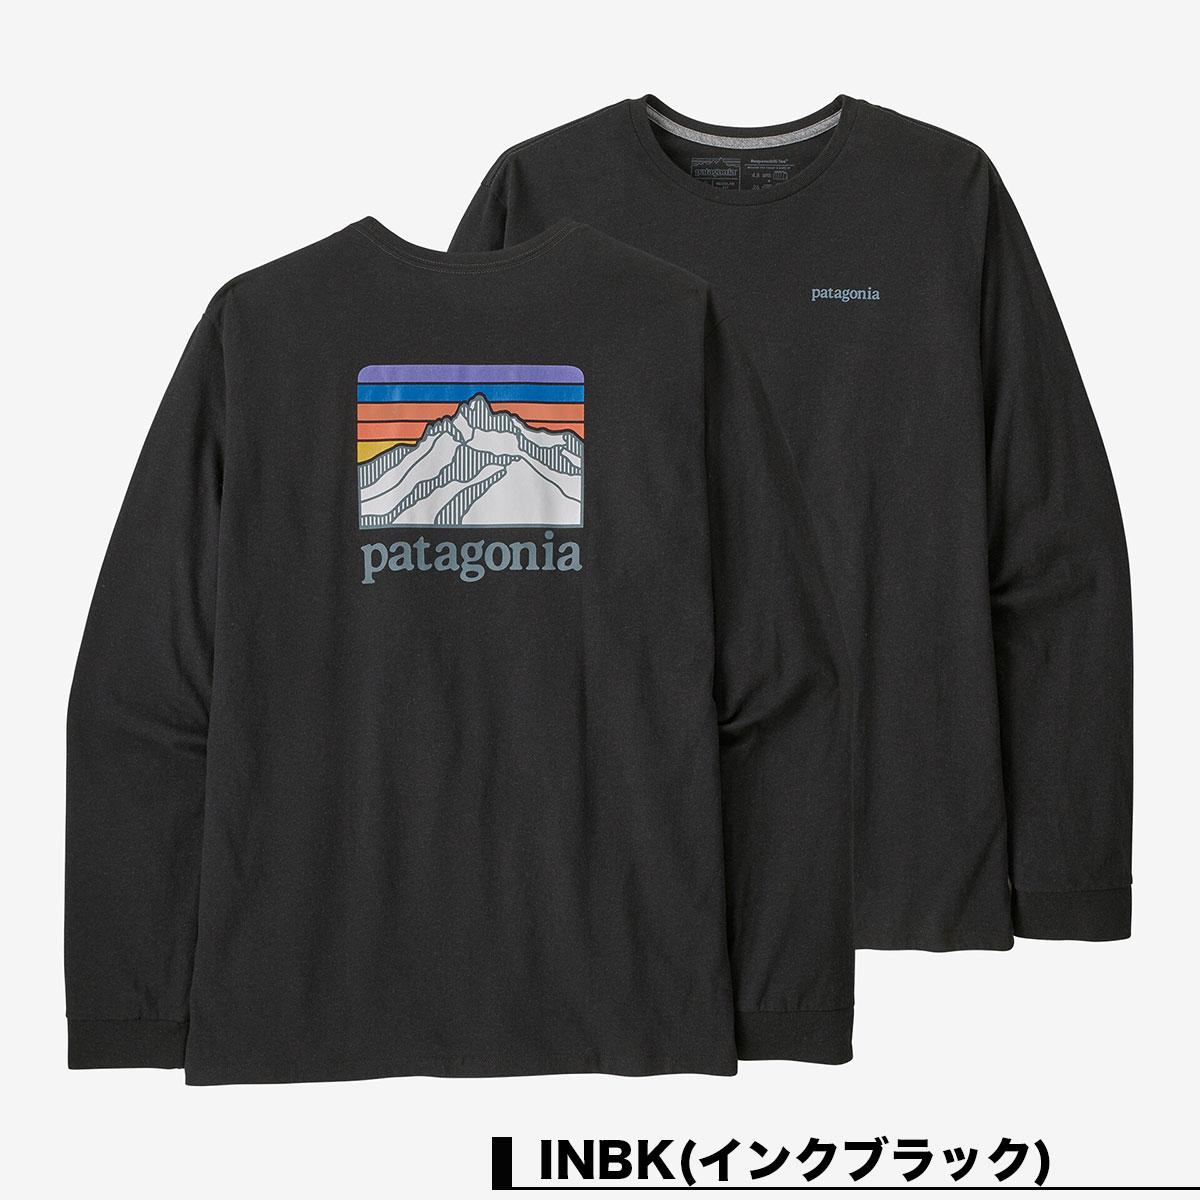 Patagonia パタゴニア ロンT 長袖 Tシャツ トップス メンズ バックプリント クルーネック サーフィン 釣り アウトドア キャンプ  Men's Long-Sleeved Line Logo Ridge Responsibili-Tee 全2色 S M 人気 ブランド 